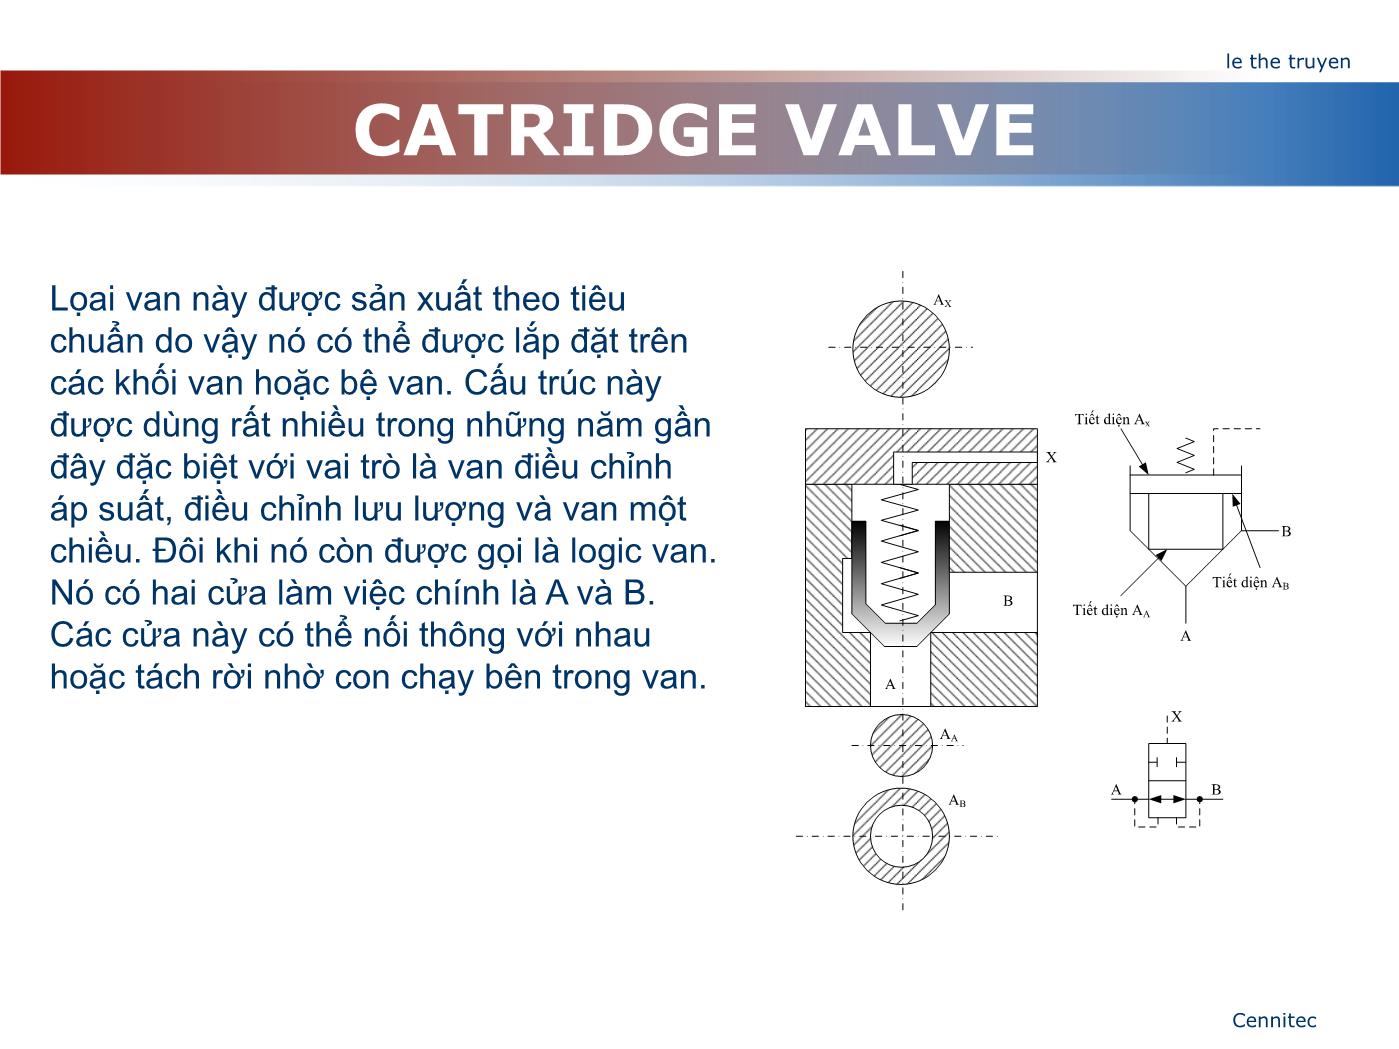 Bài giảng Truyển động thủy lực và khí - Chương 8: Catridge Valve - Lê Thế Truyền trang 2